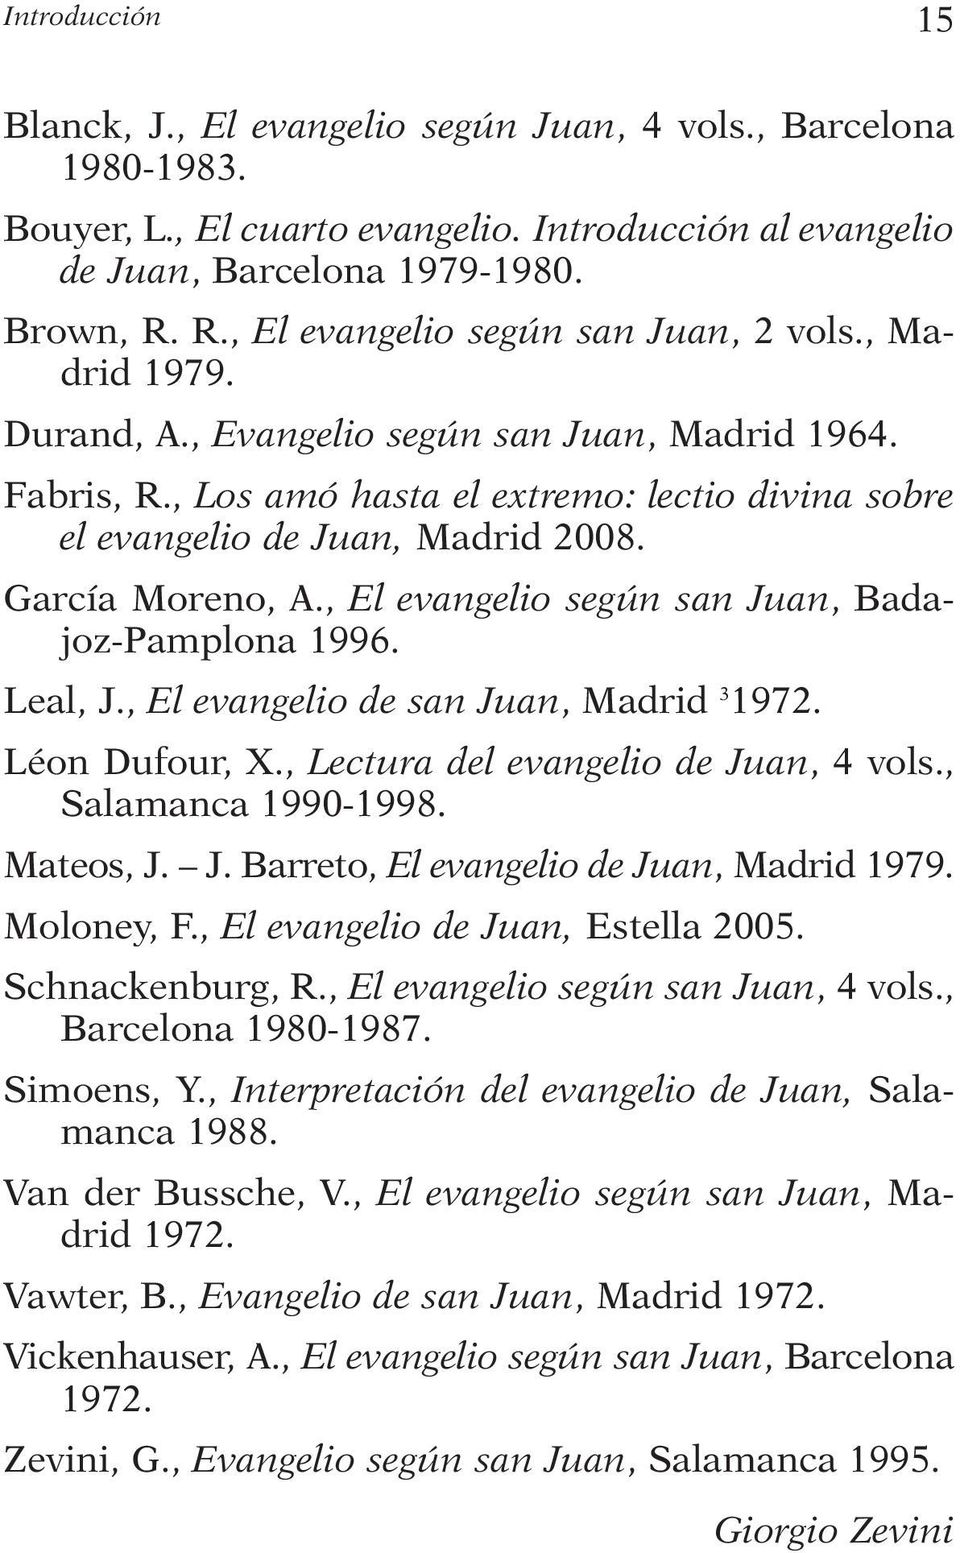 García Moreno, A., El evangelio según san Juan, Badajoz-Pamplona 1996. Leal, J., El evangelio de san Juan, Madrid 3 1972. Léon Dufour, X., Lectura del evangelio de Juan, 4 vols., Salamanca 1990-1998.